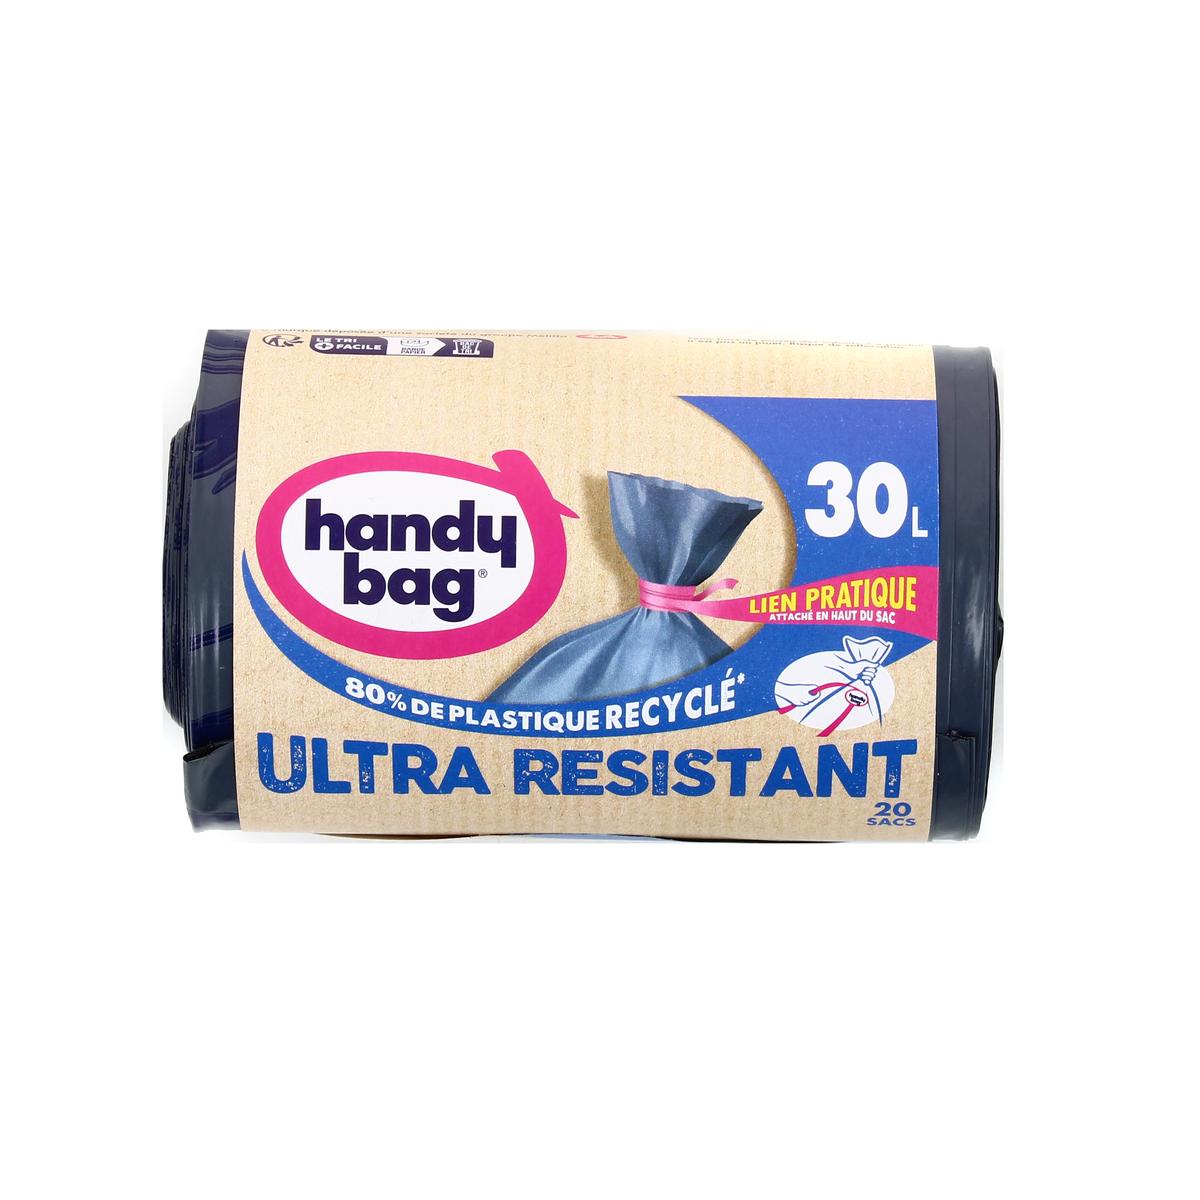 Sacs Poubelle Ultra-résistant 30L Handy Bag chez